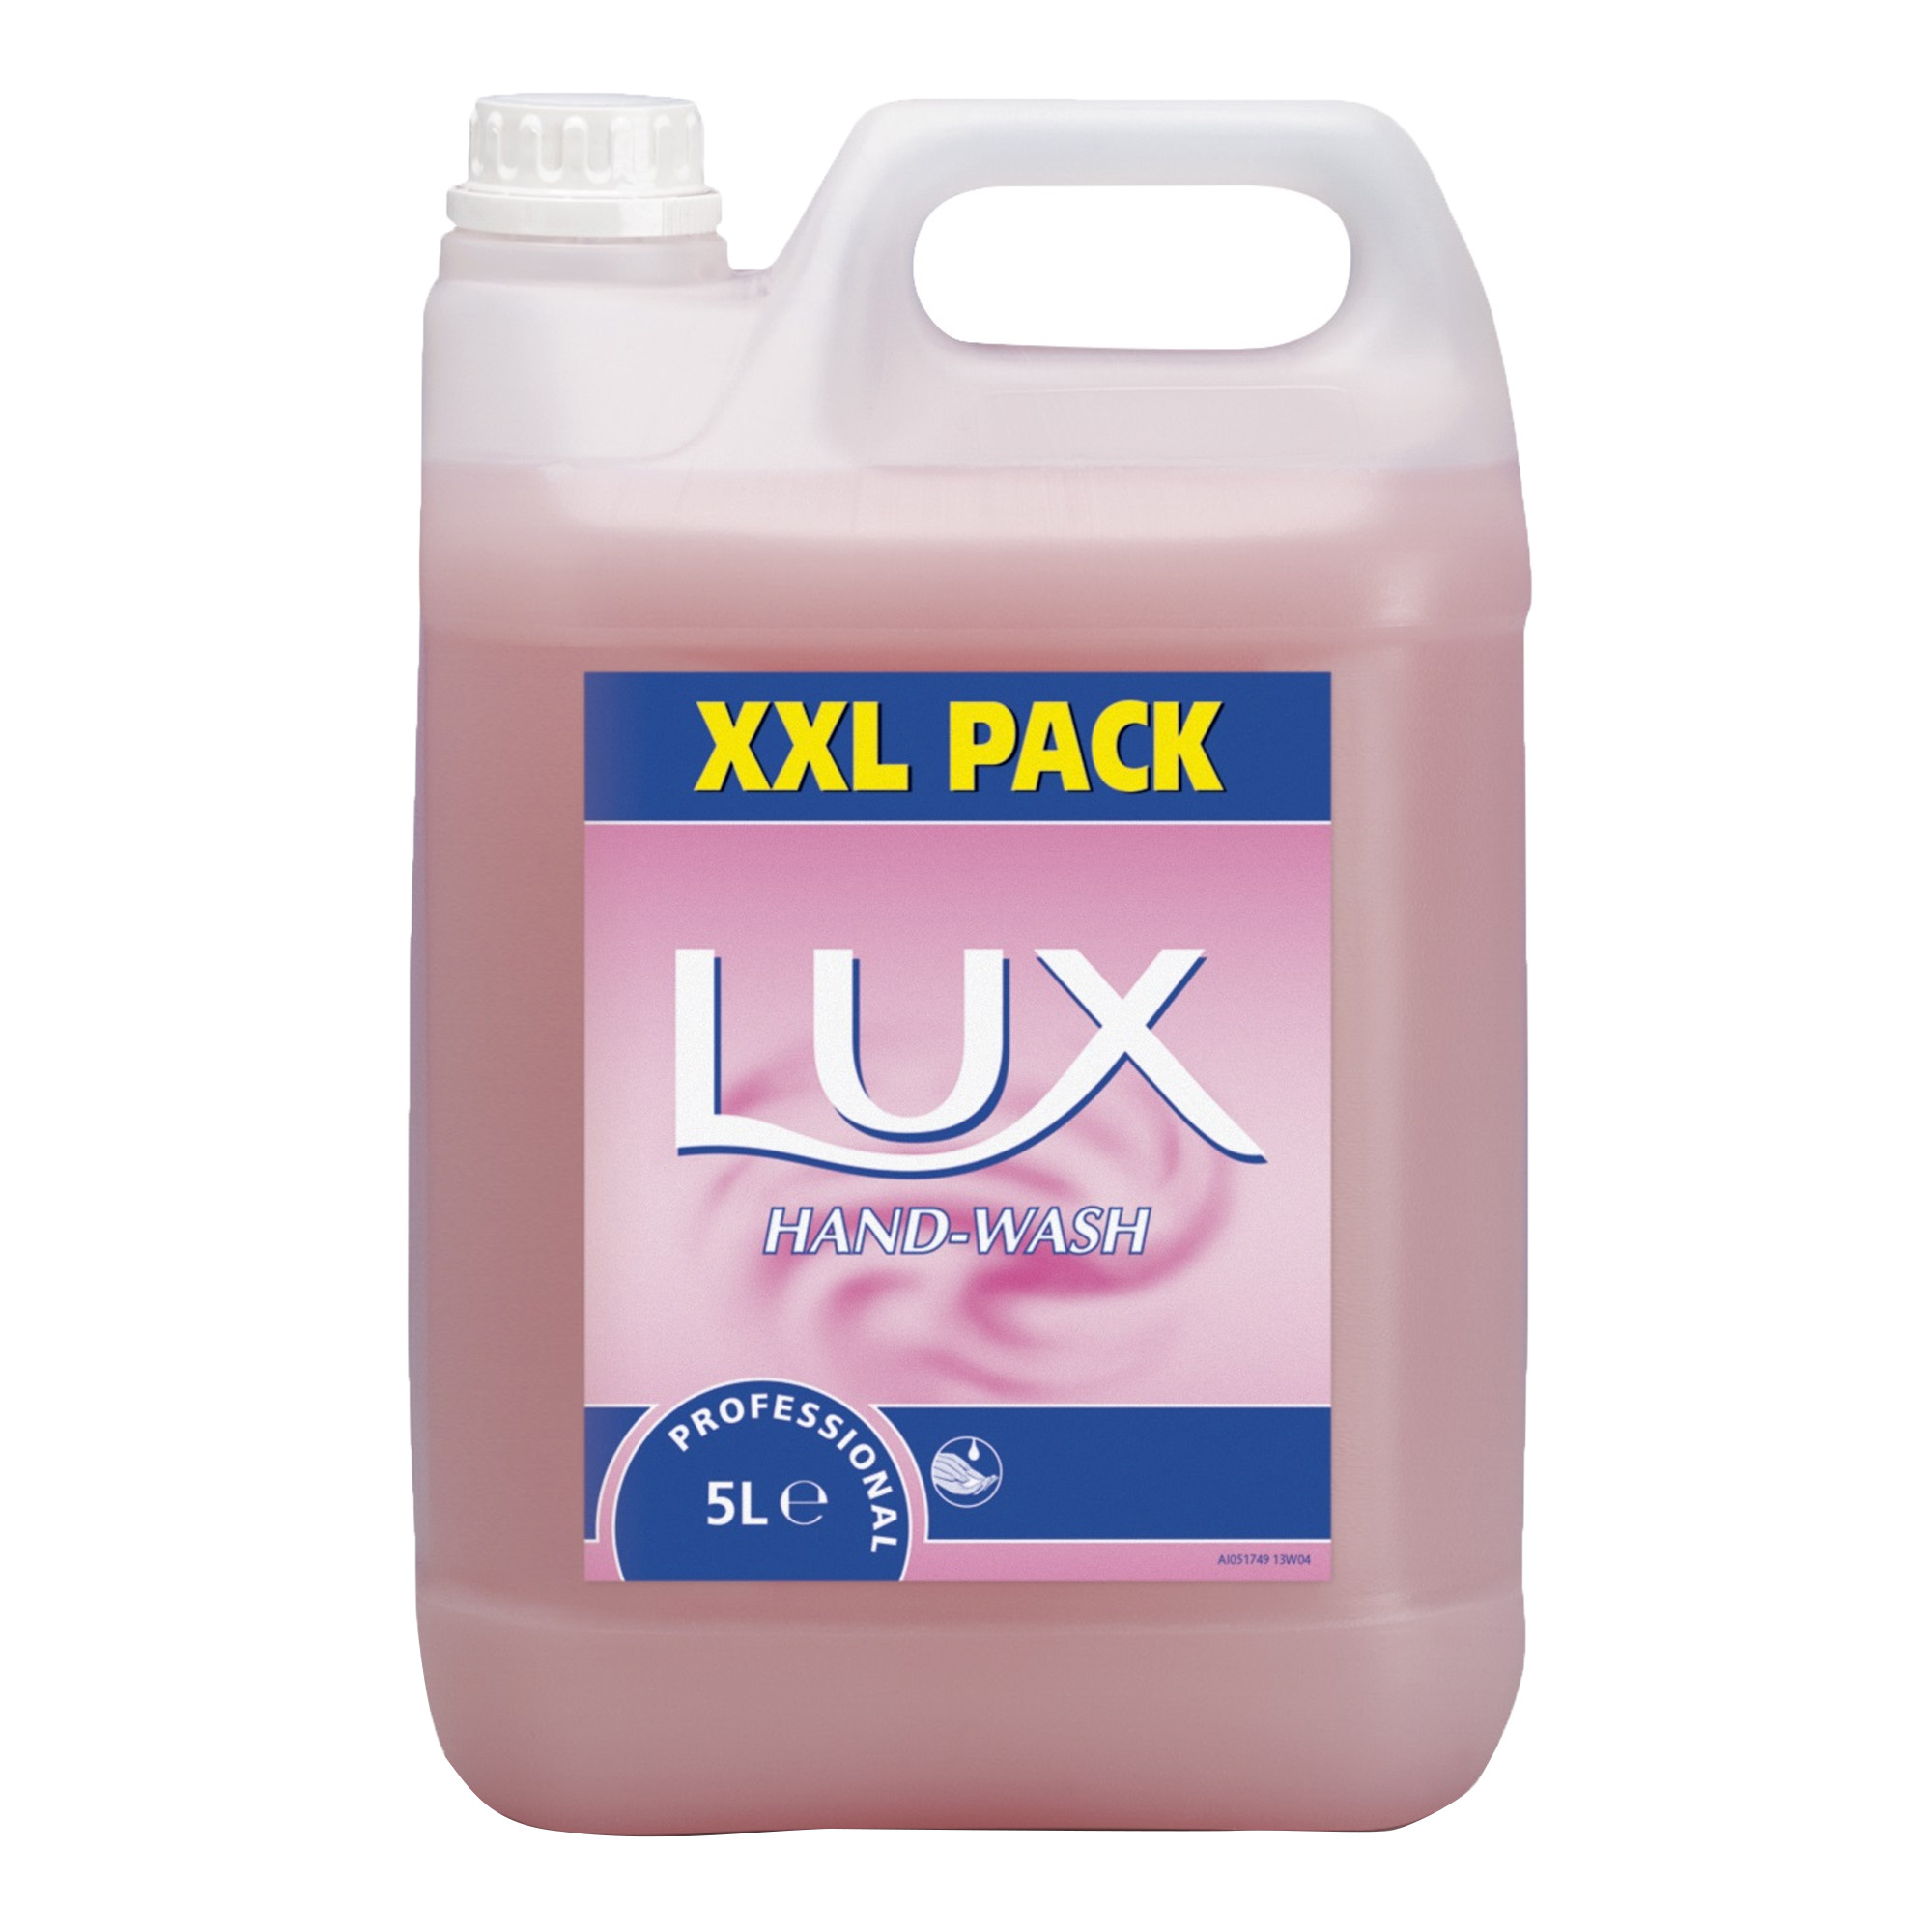 Lux Hand-Wash Seifenlotion 5 Liter Kanister 7508628_1